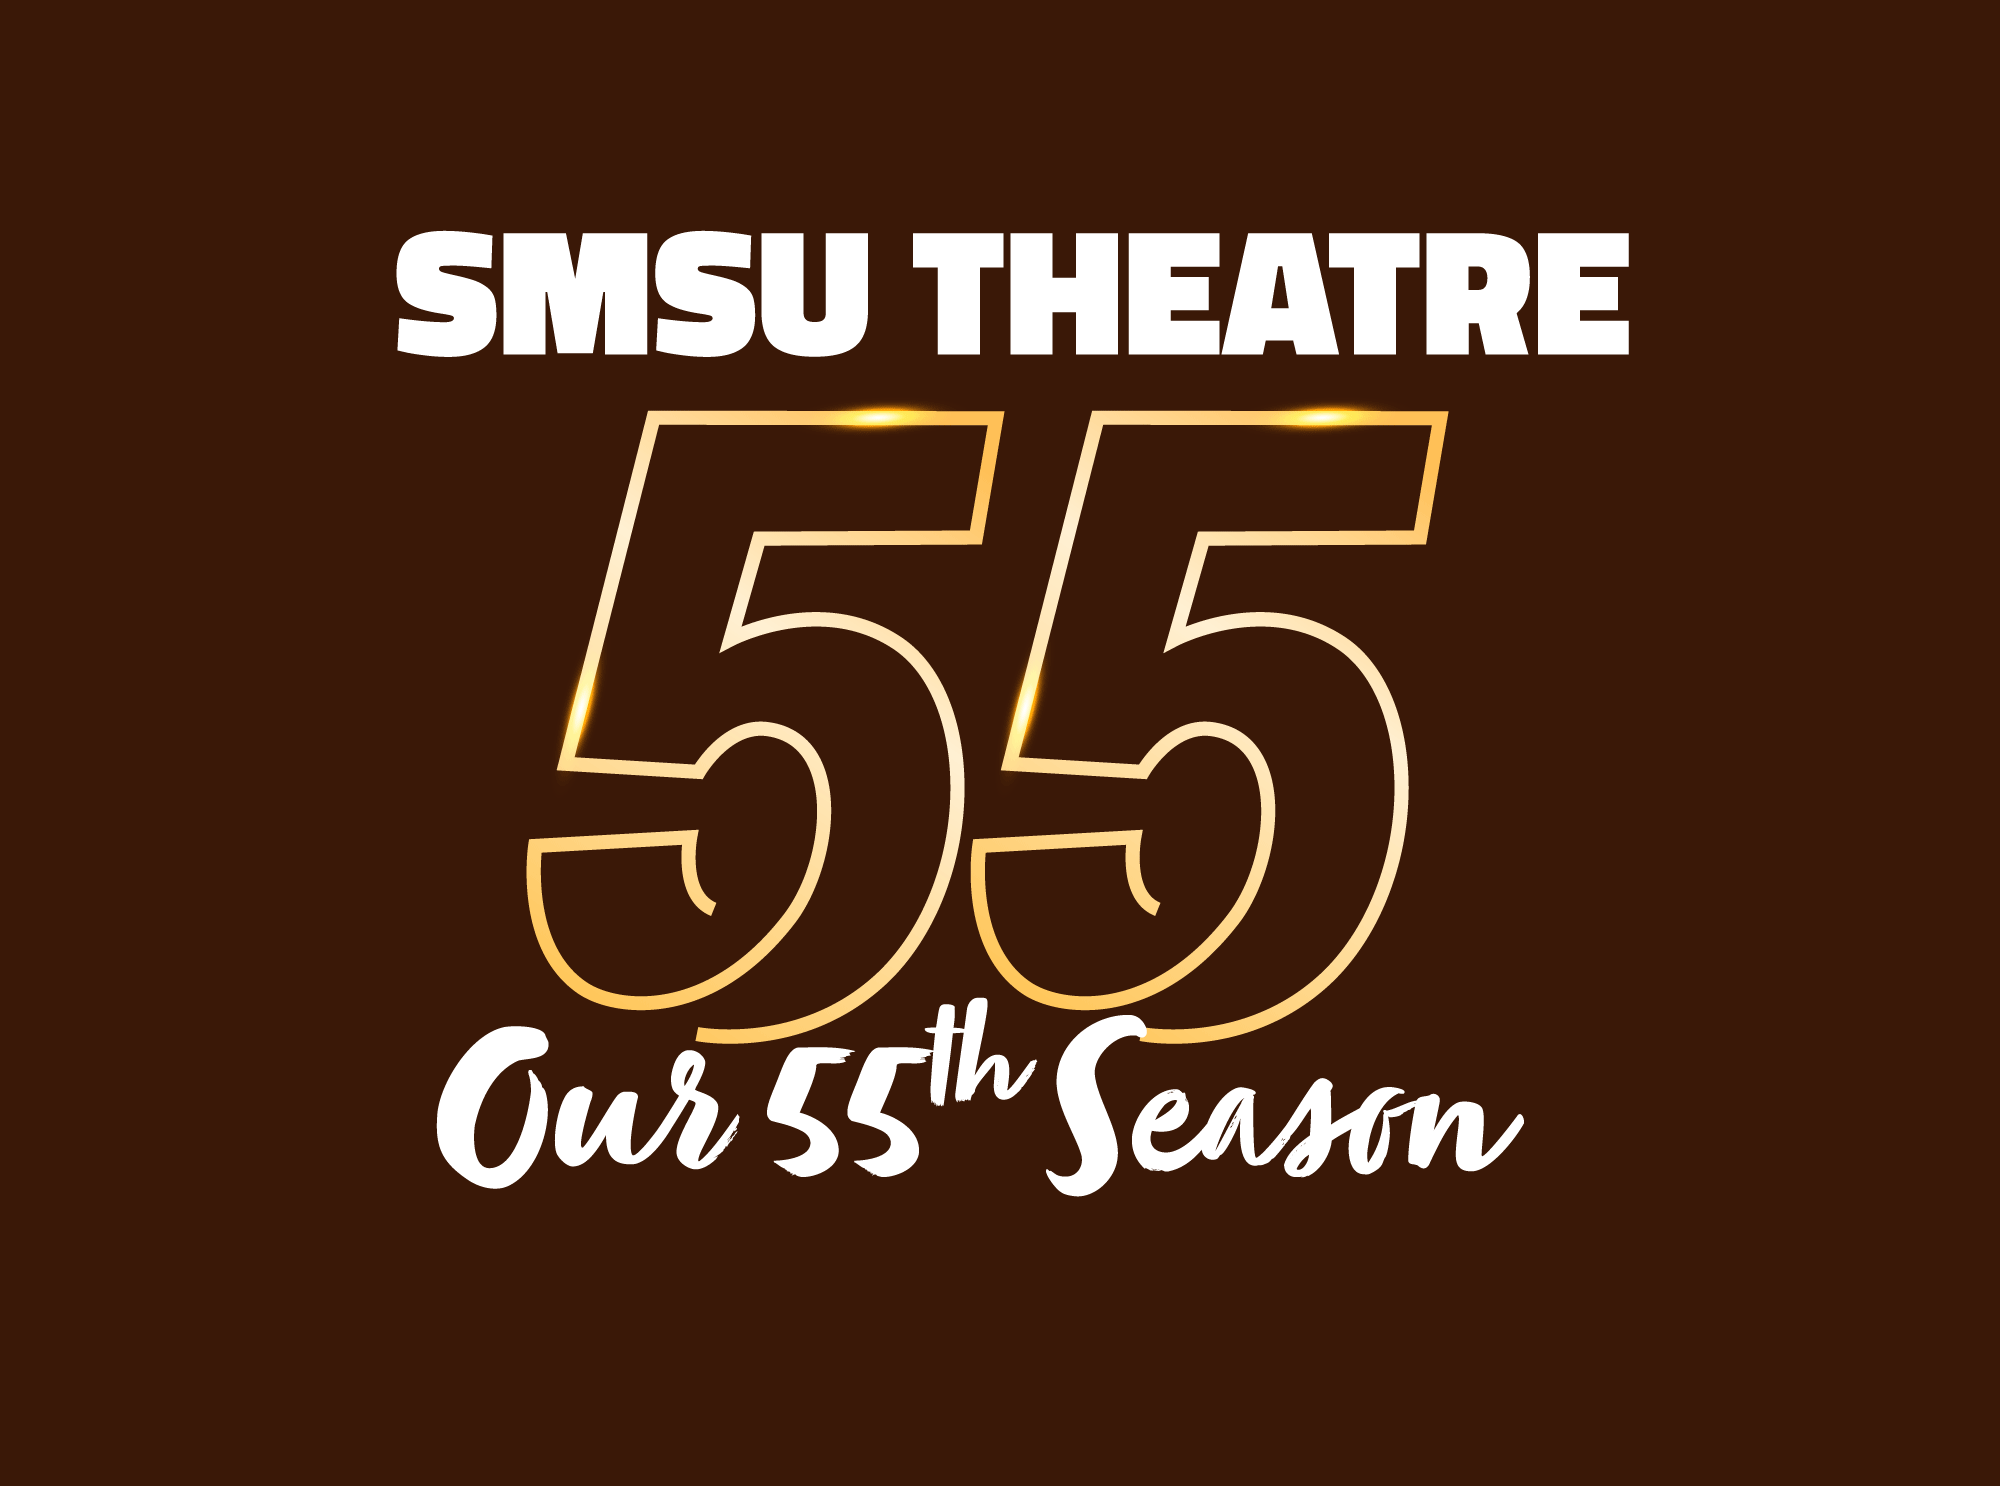 SMSU Theatre Opens 55th Season